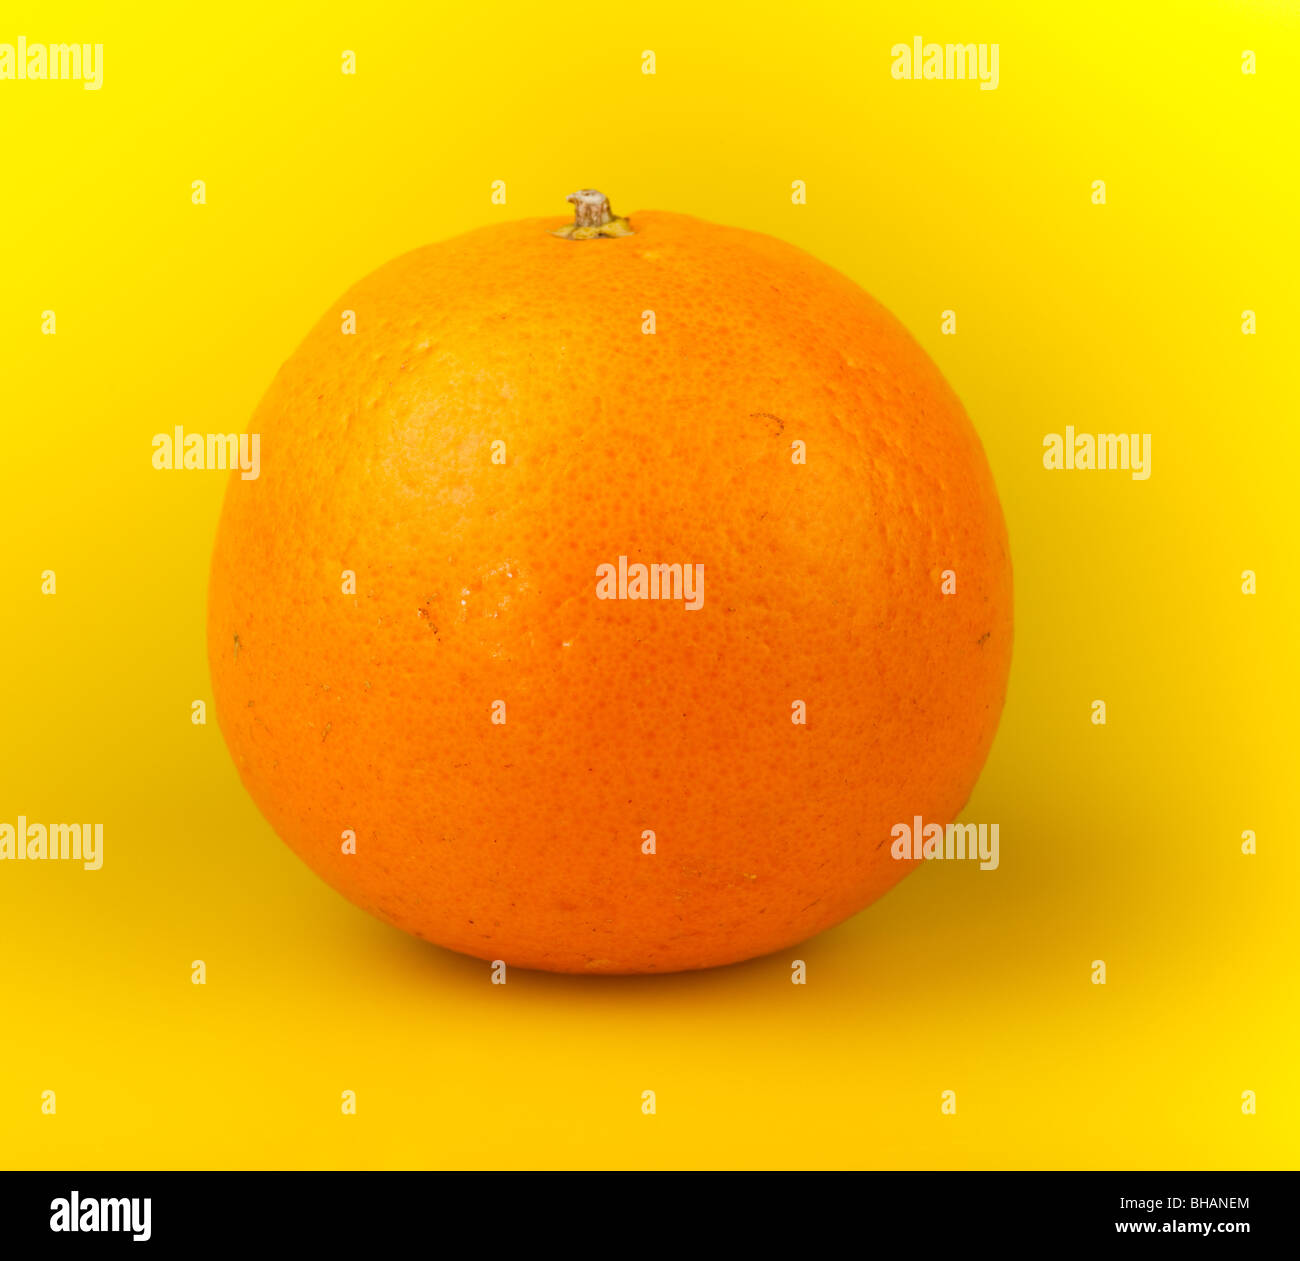 Eine Orange Mandarine auf einem gelben Hintergrund. Stockfoto